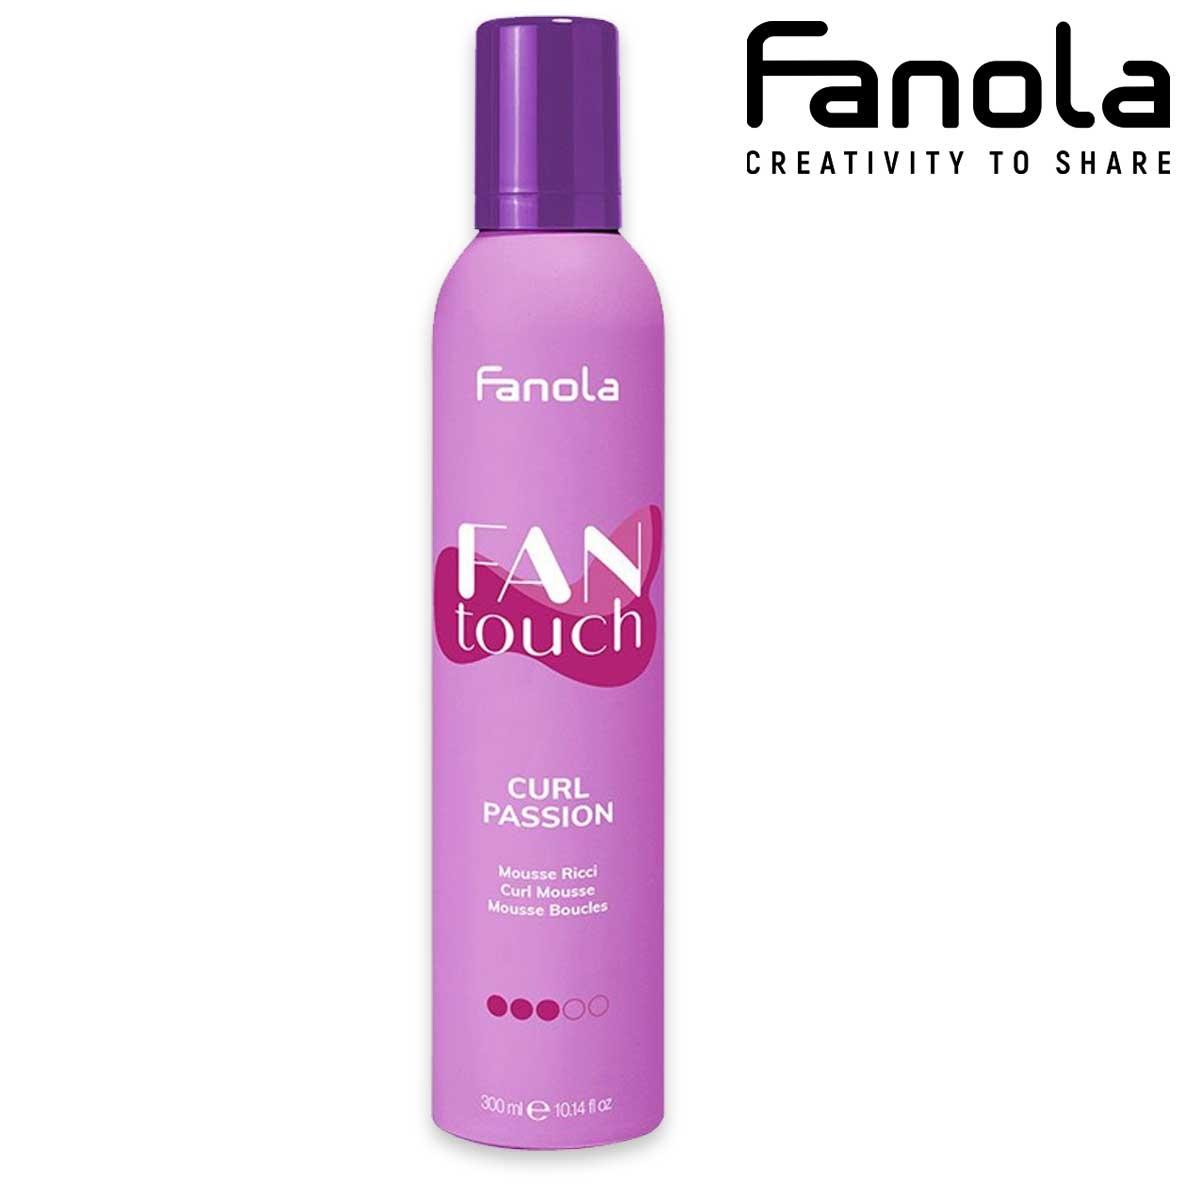 Fanola Fanola fantouch mousse ricci 300 ml 8008277764597